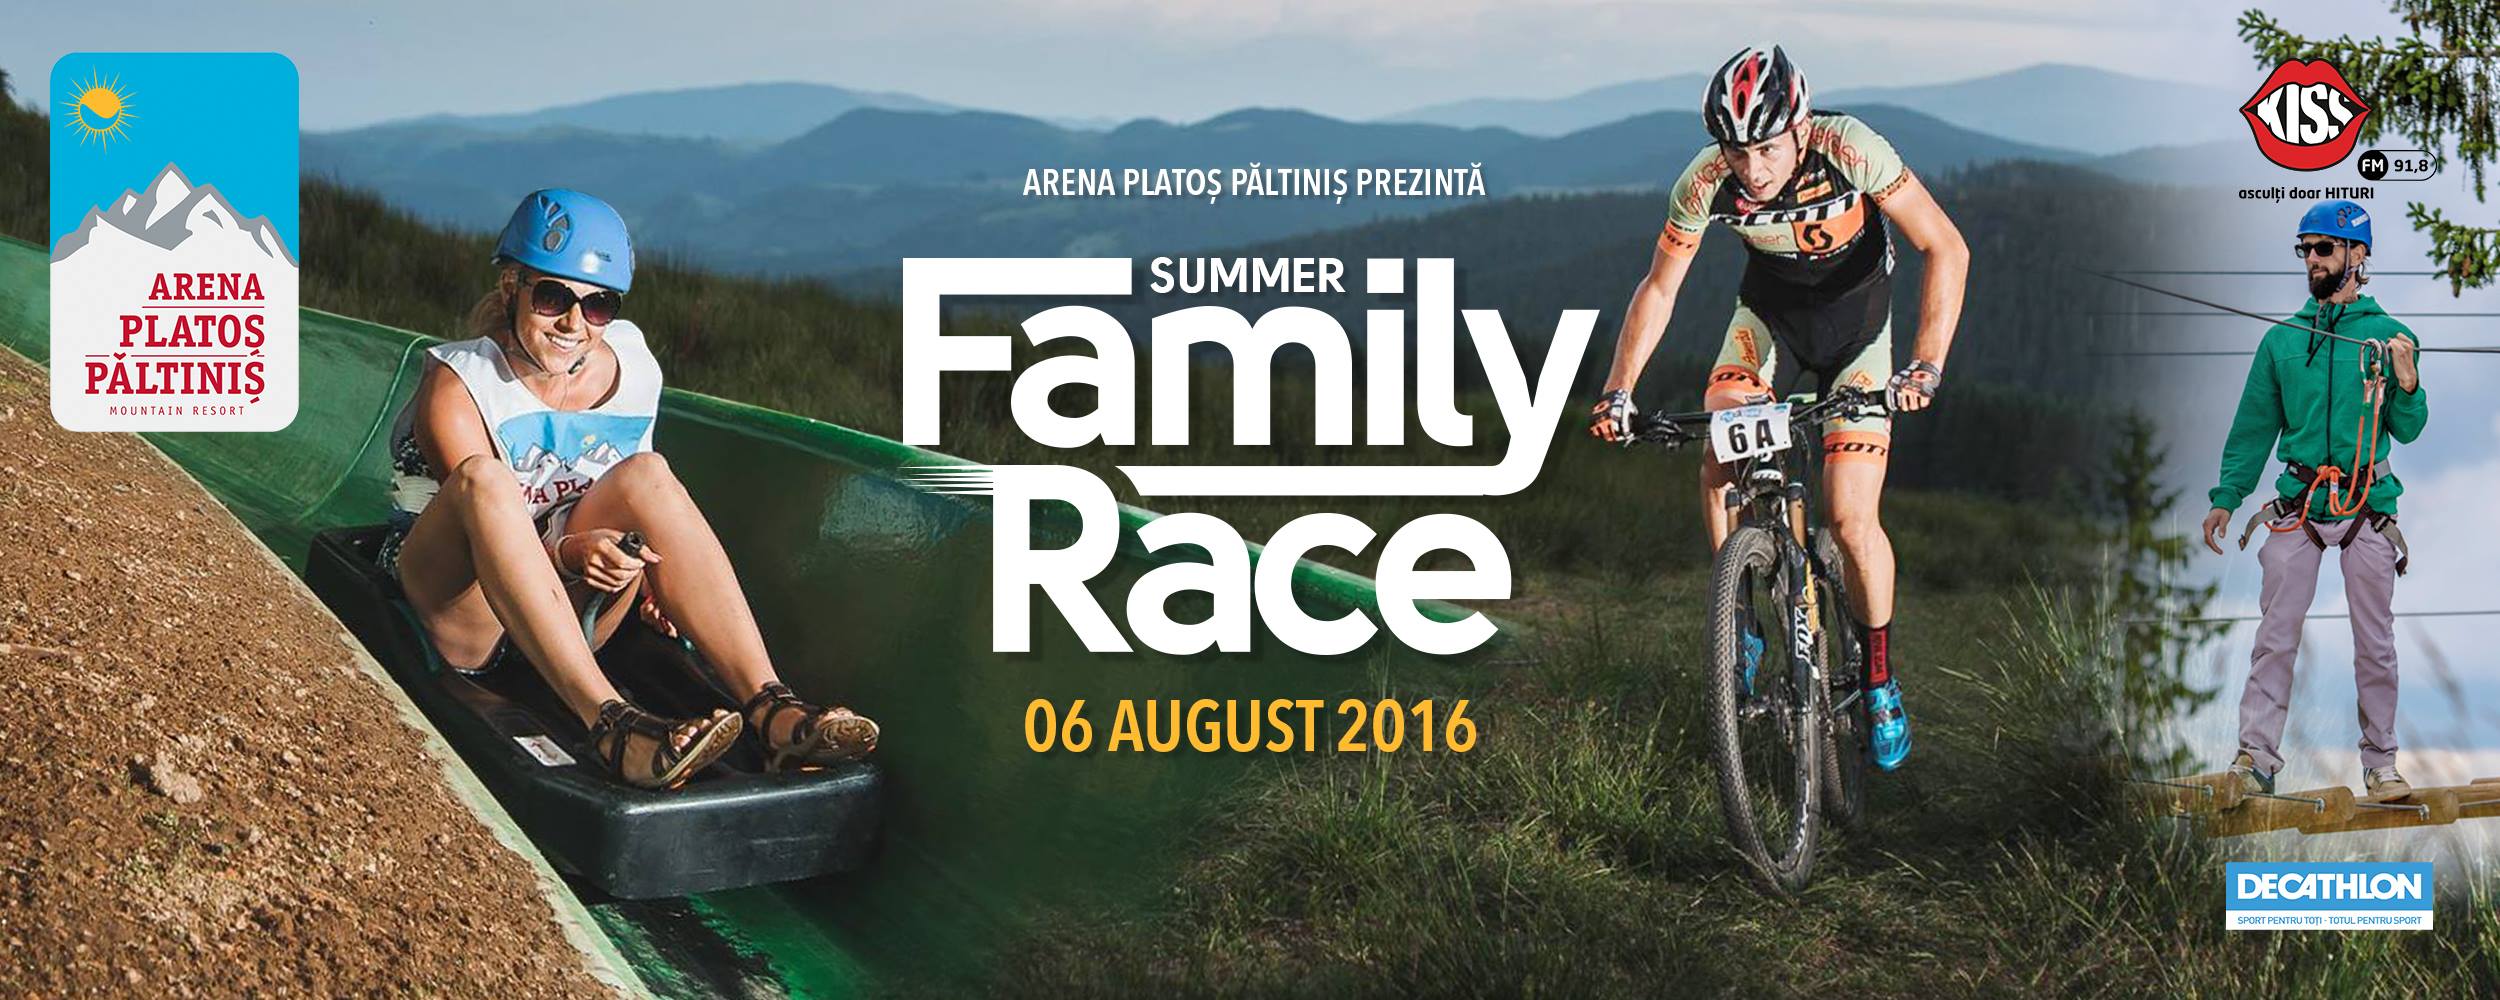 Summer Family Race